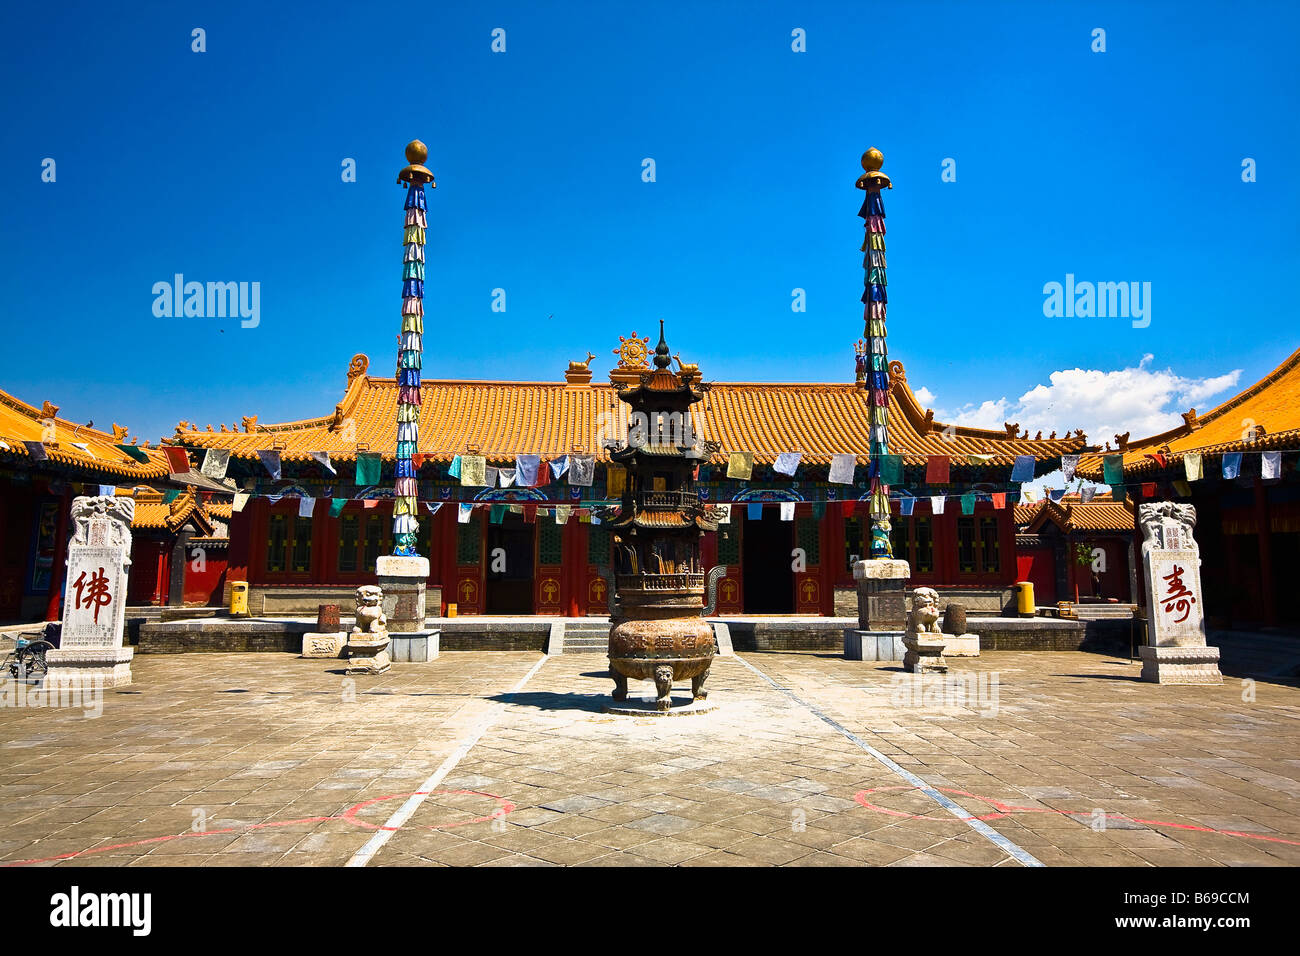 Sculpture devant un temple, Temple Da Zhao, Hohhot, Inner Mongolia, China Banque D'Images